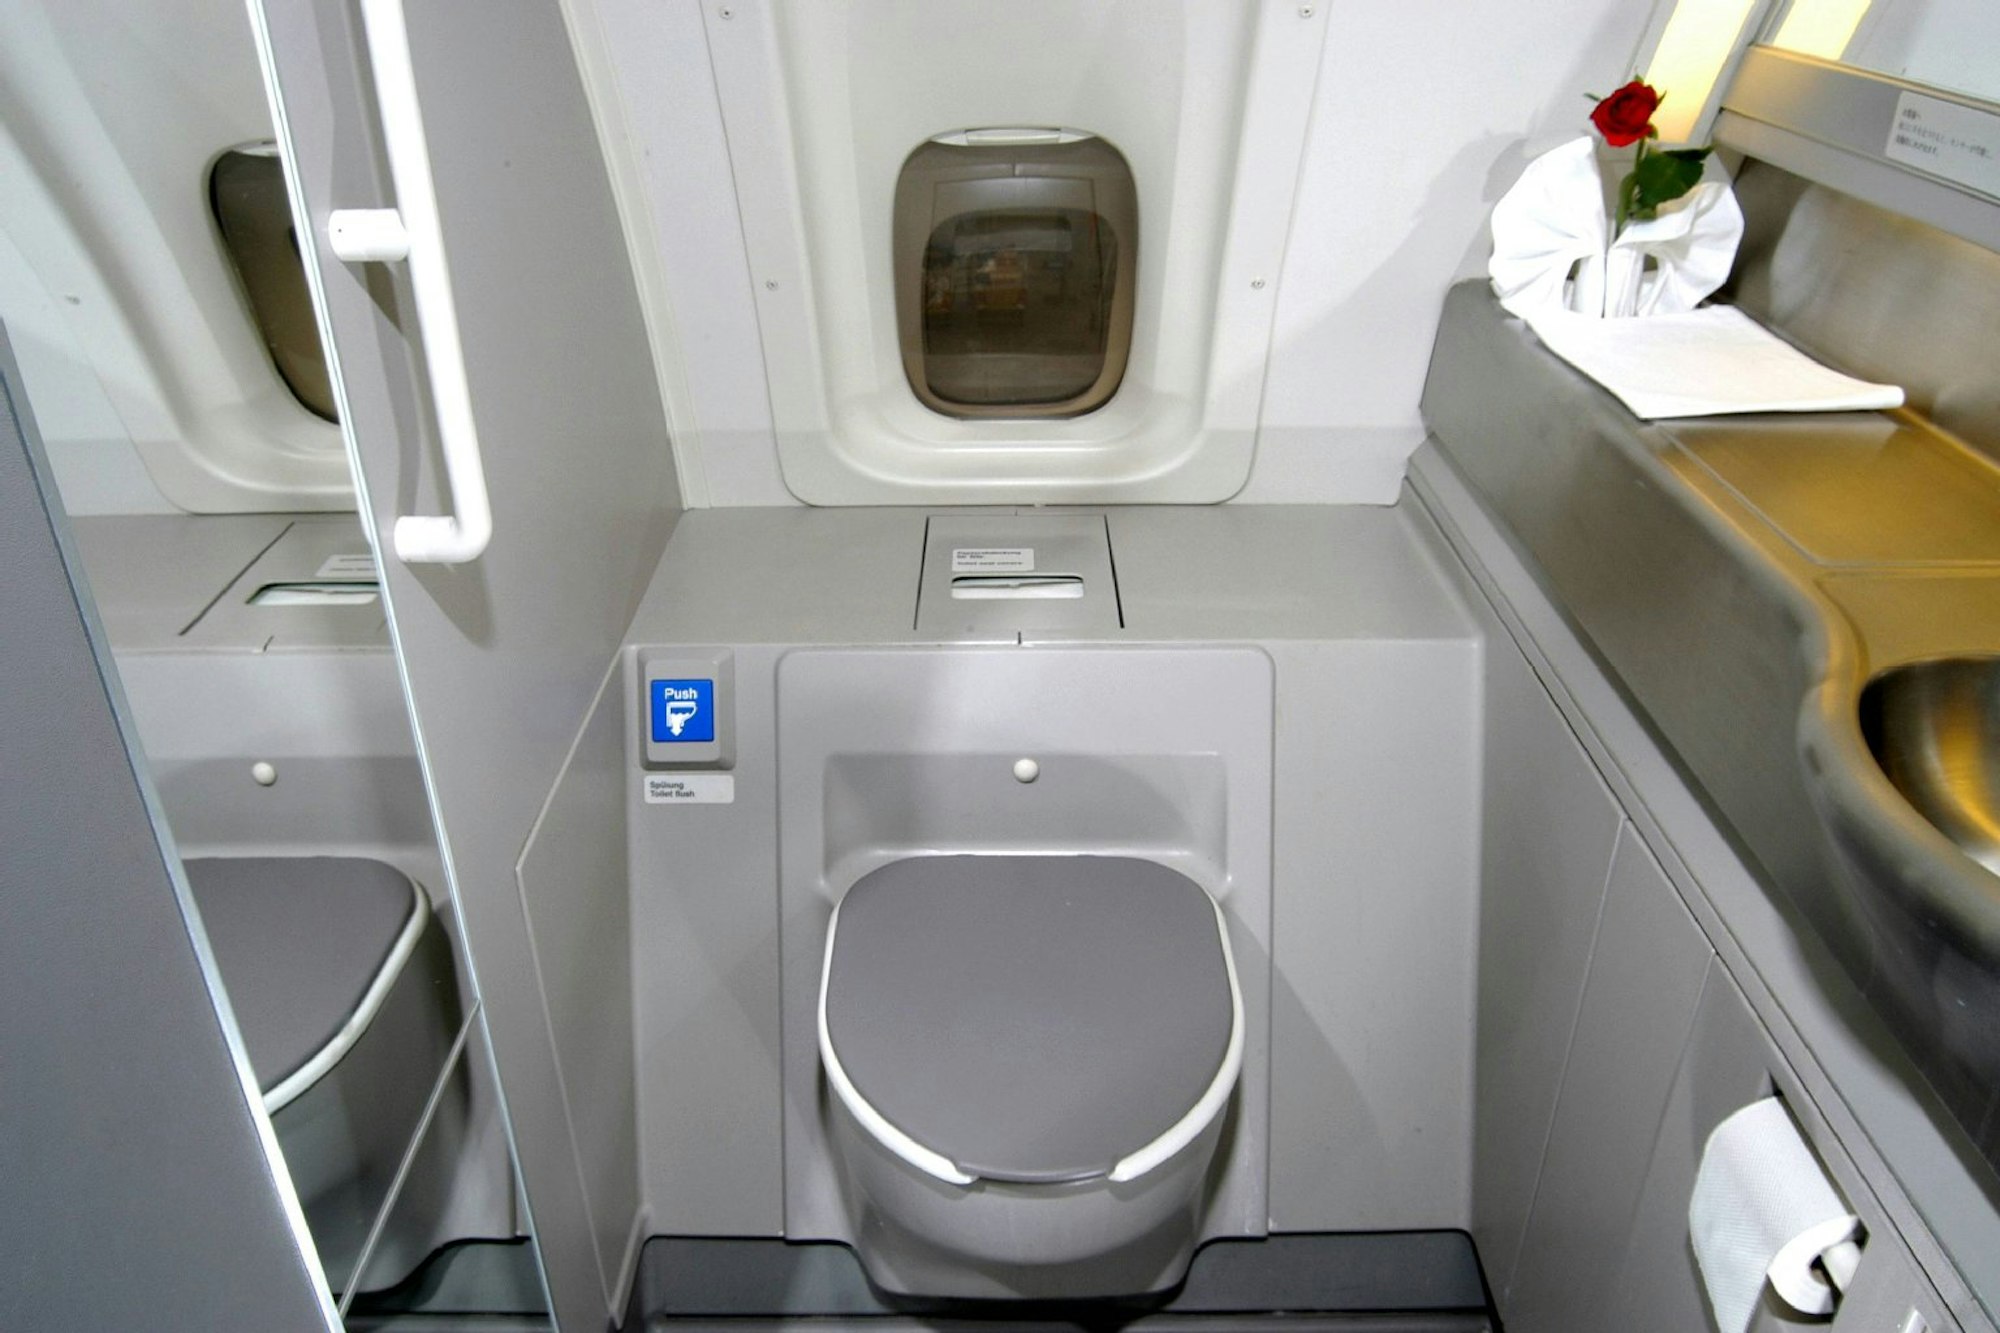 Beliebter Ort für Sex im Flugzeug: die Bordtoilette.